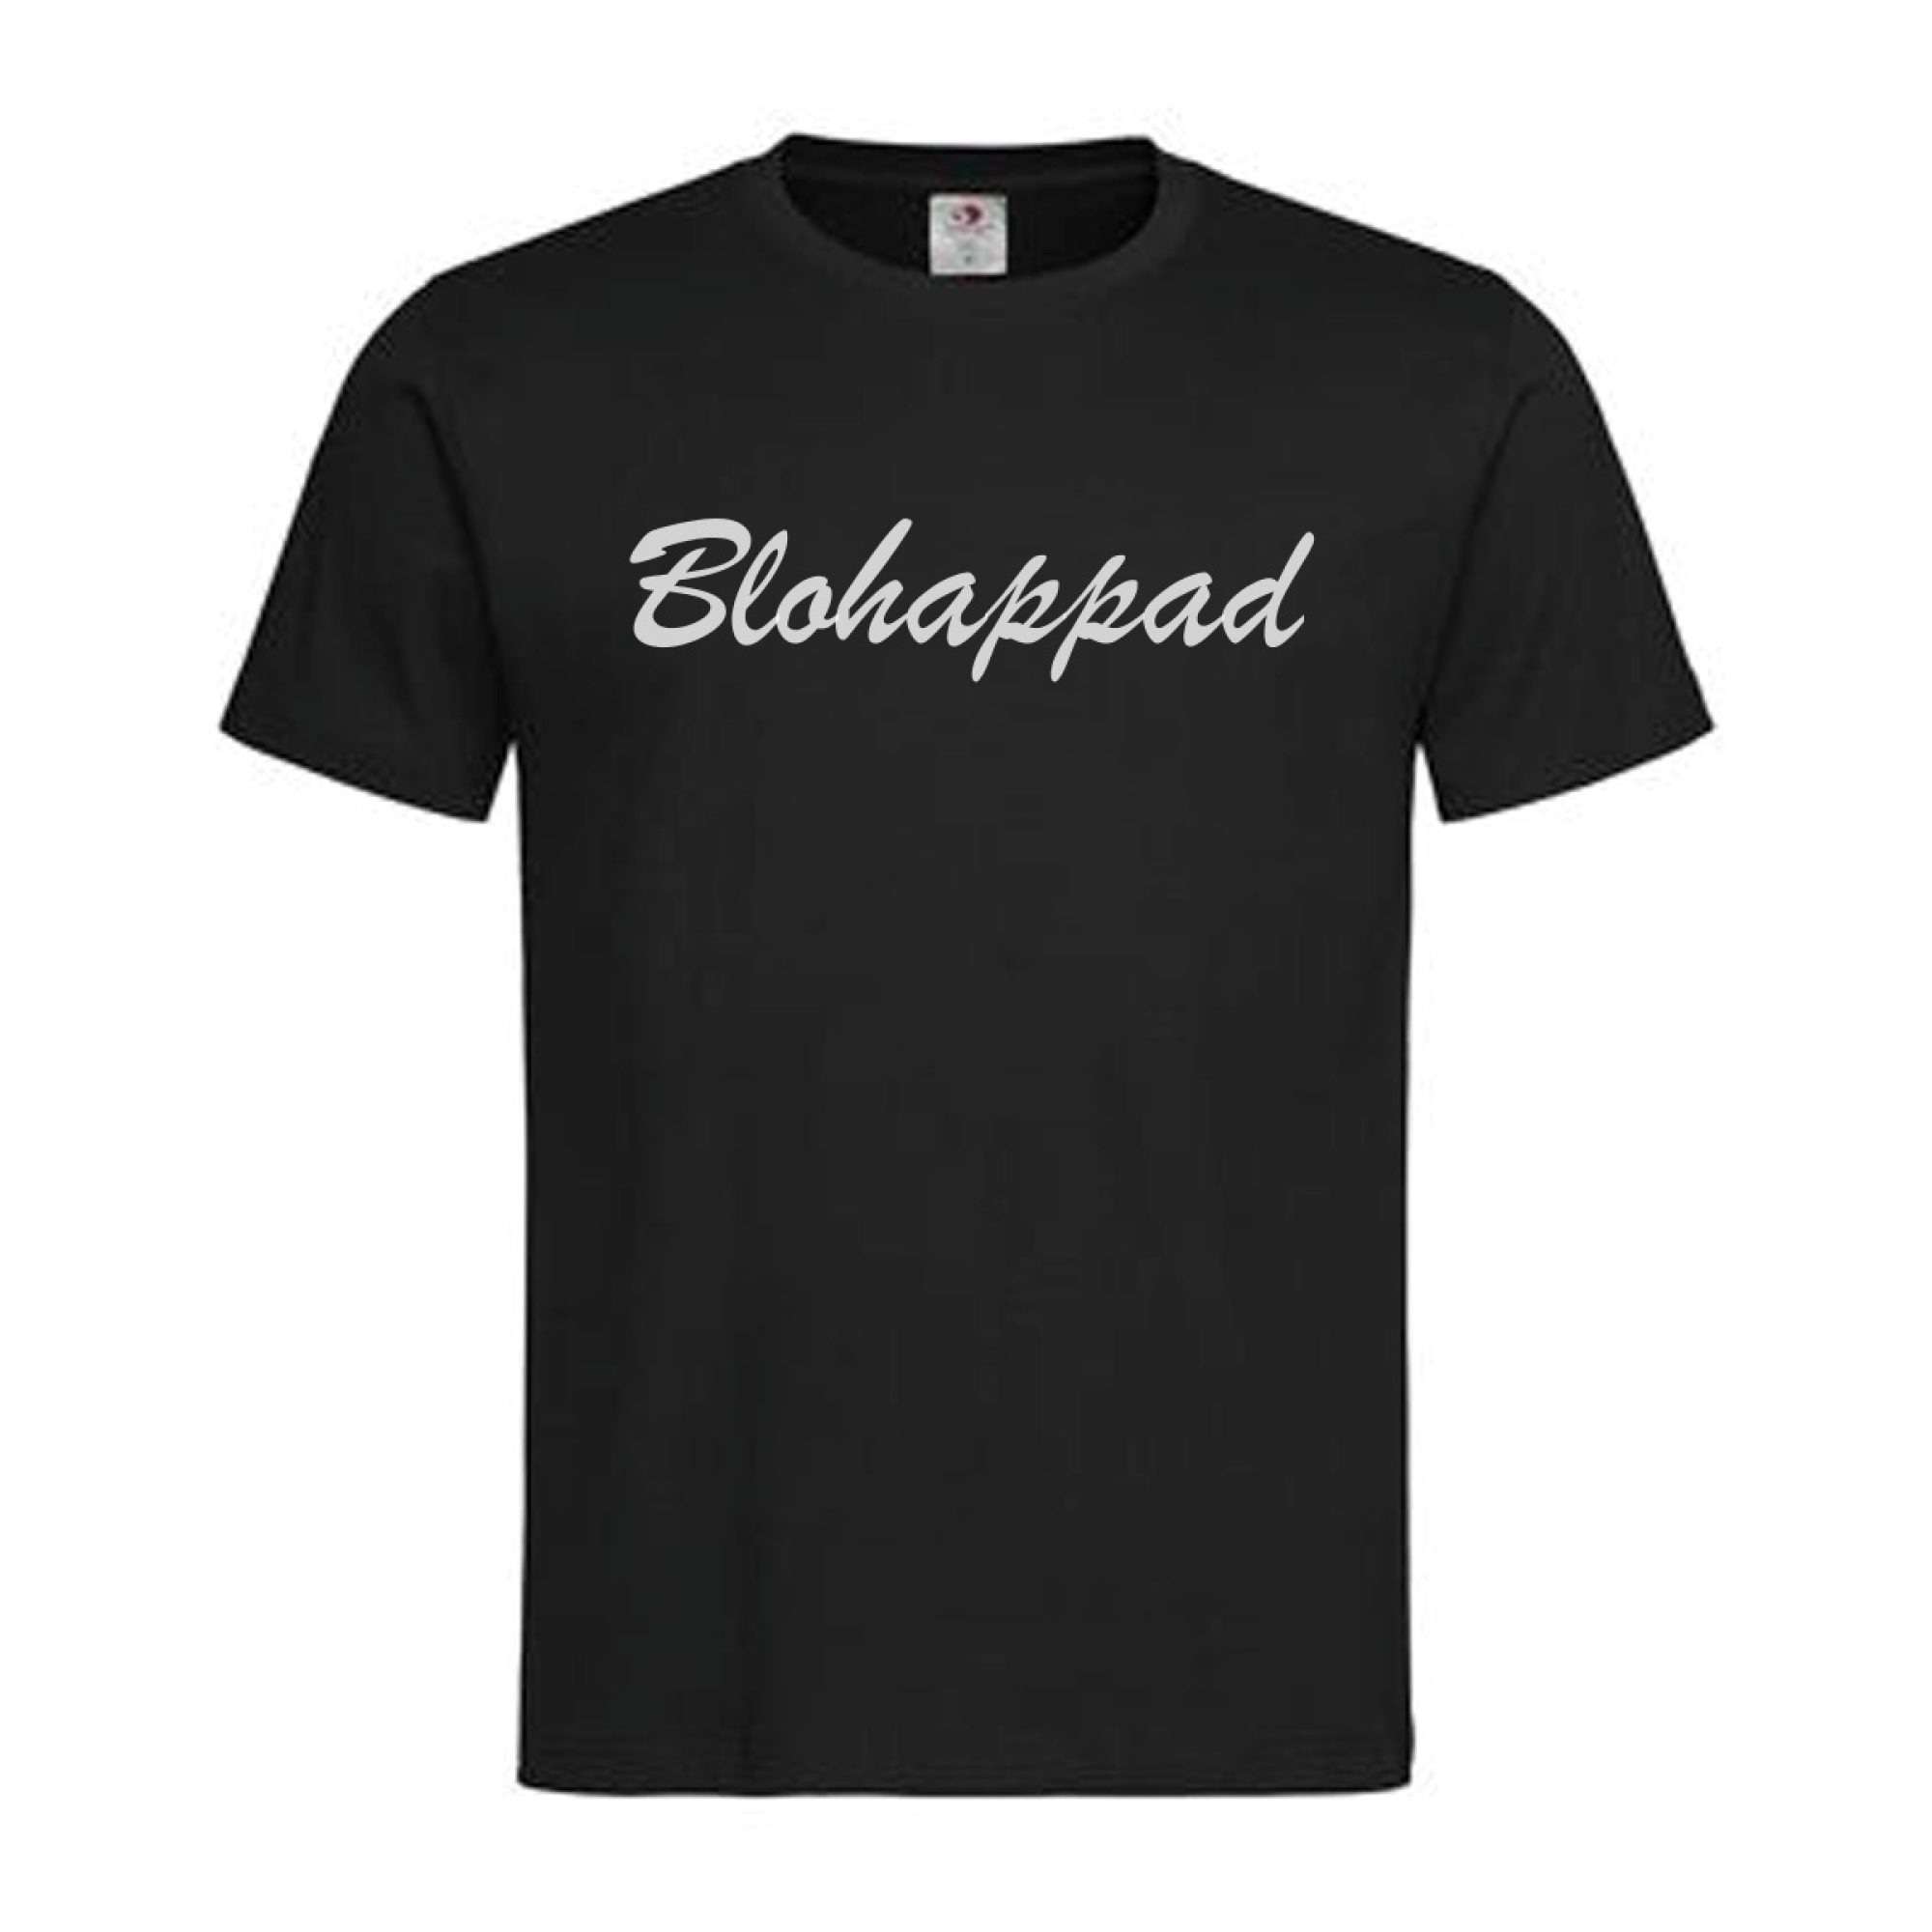 T-Shirt Oberösterreich Blohappad – Bloßfüßig in Mundart, Dialekt